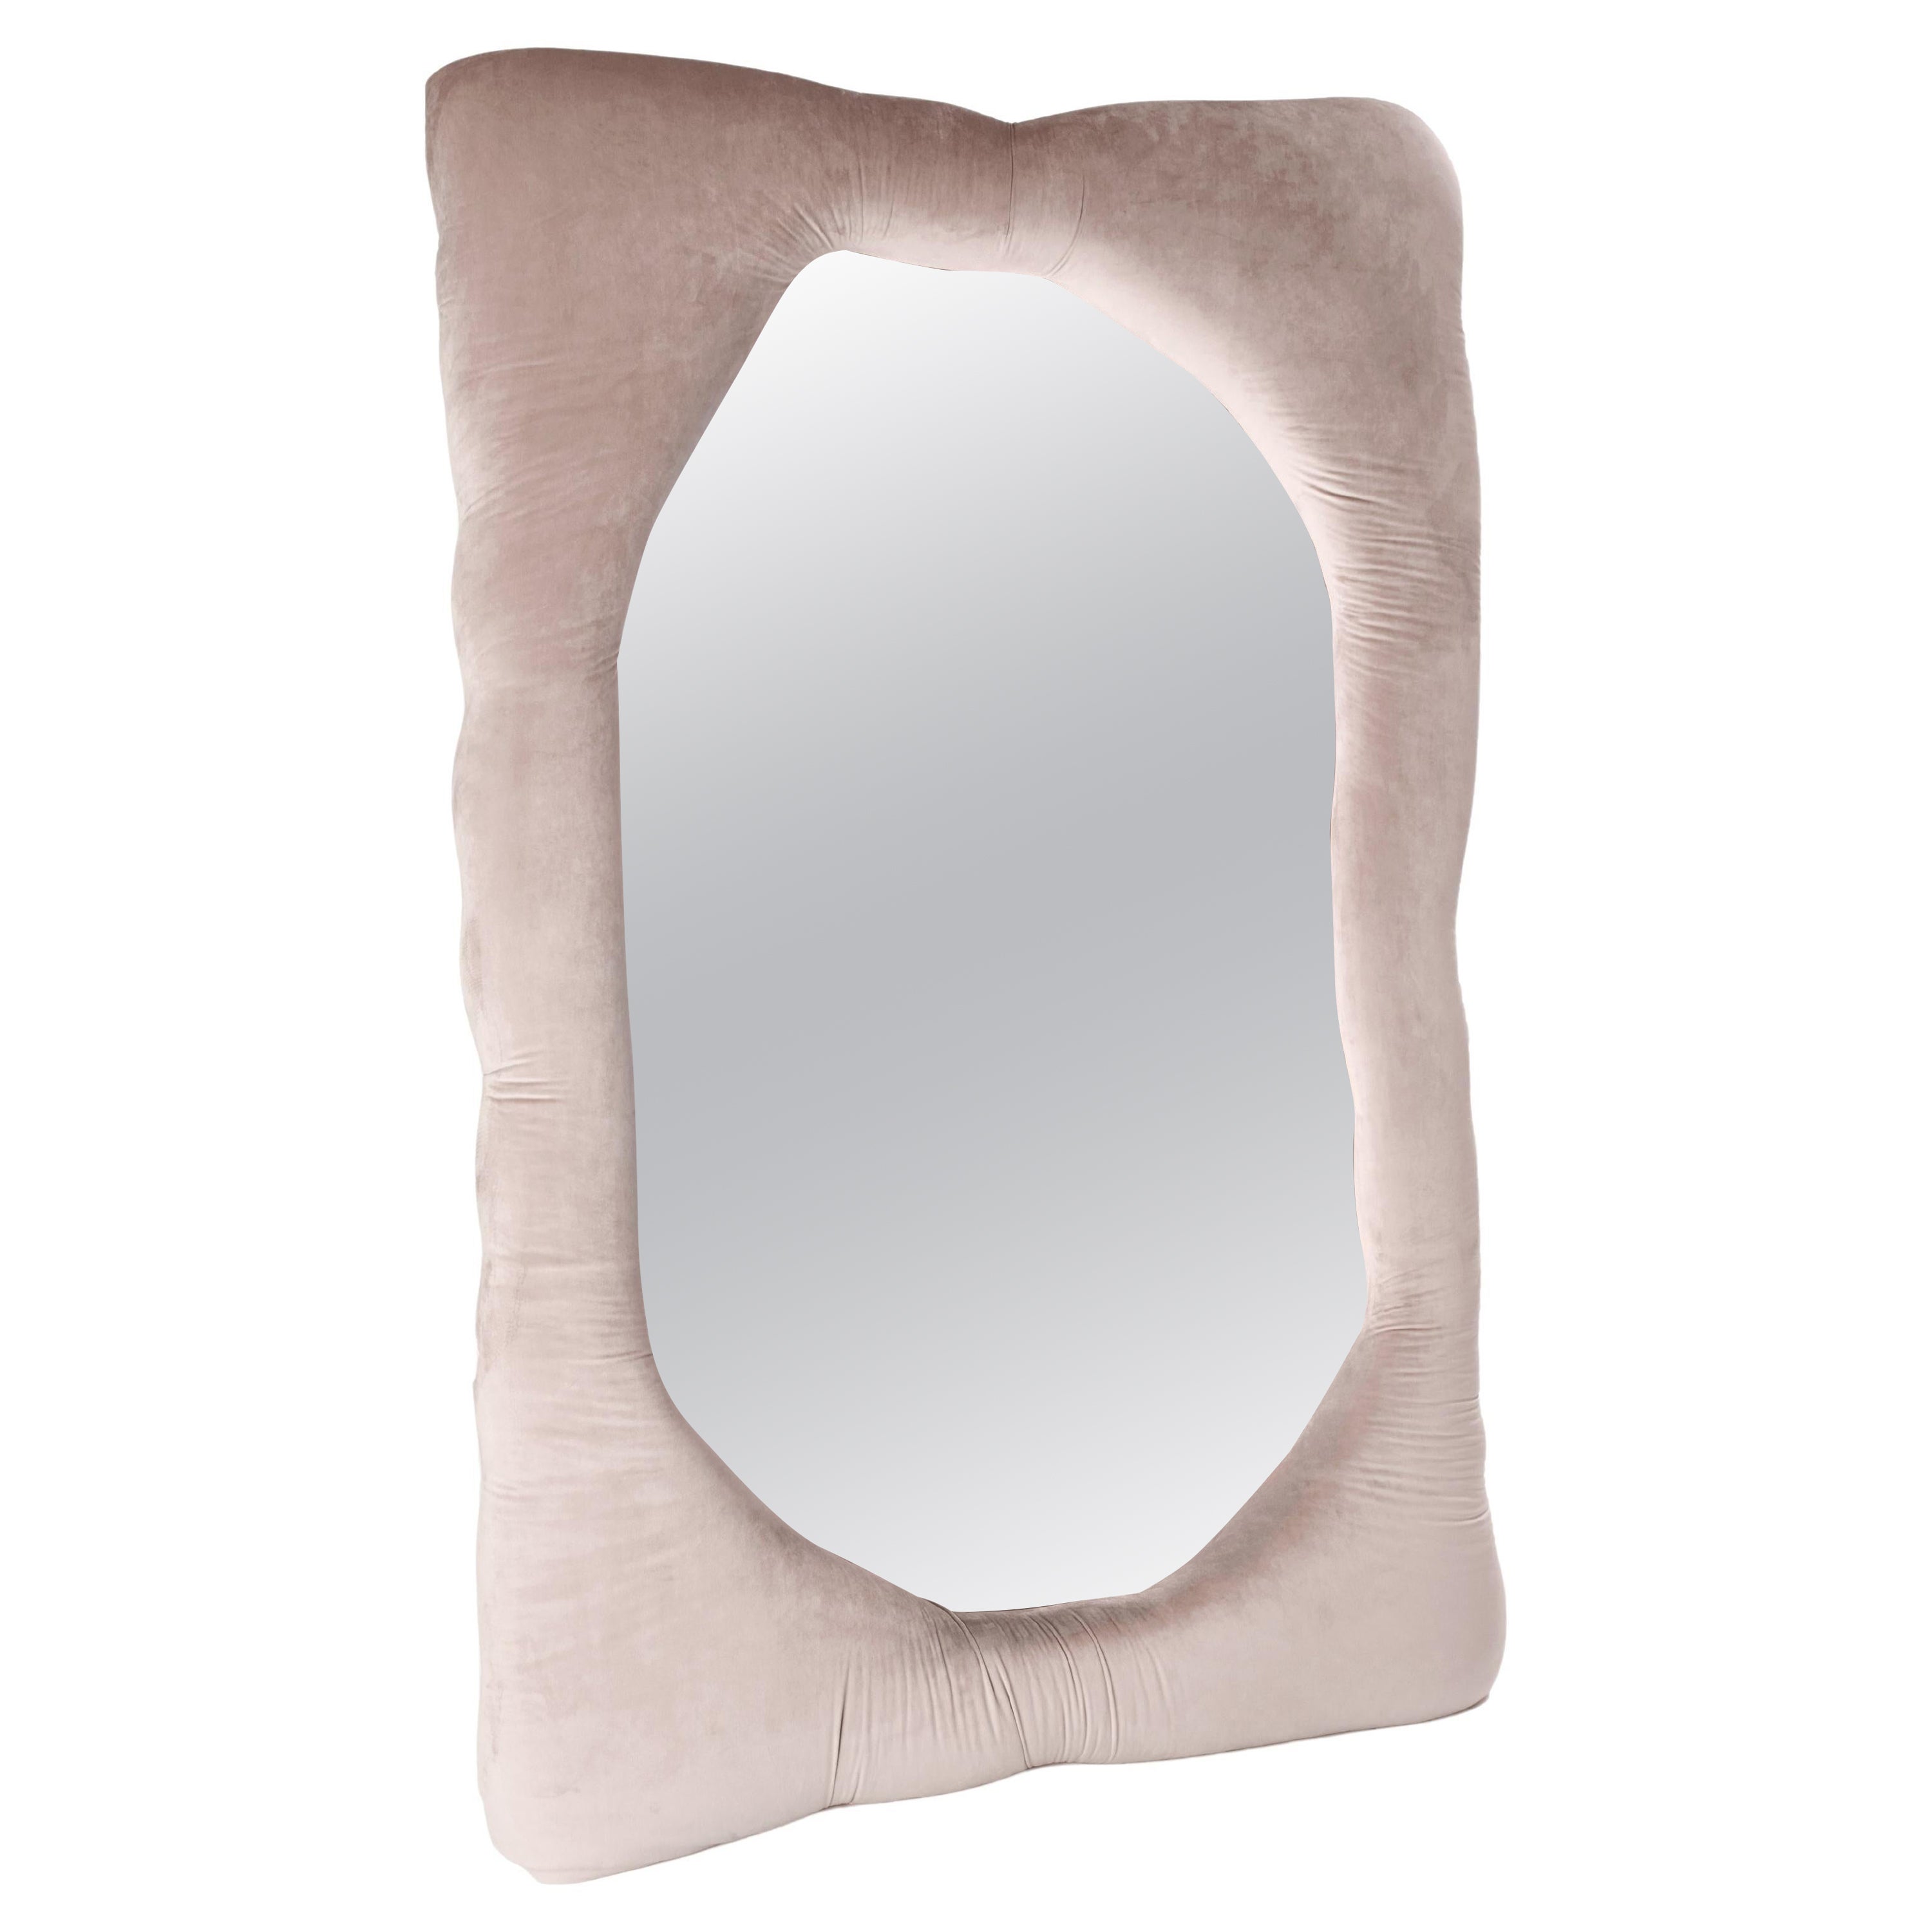 Velvet Biomorphic Mirror in Coral Pink by Brandi Howe, REP by Tuleste Factory